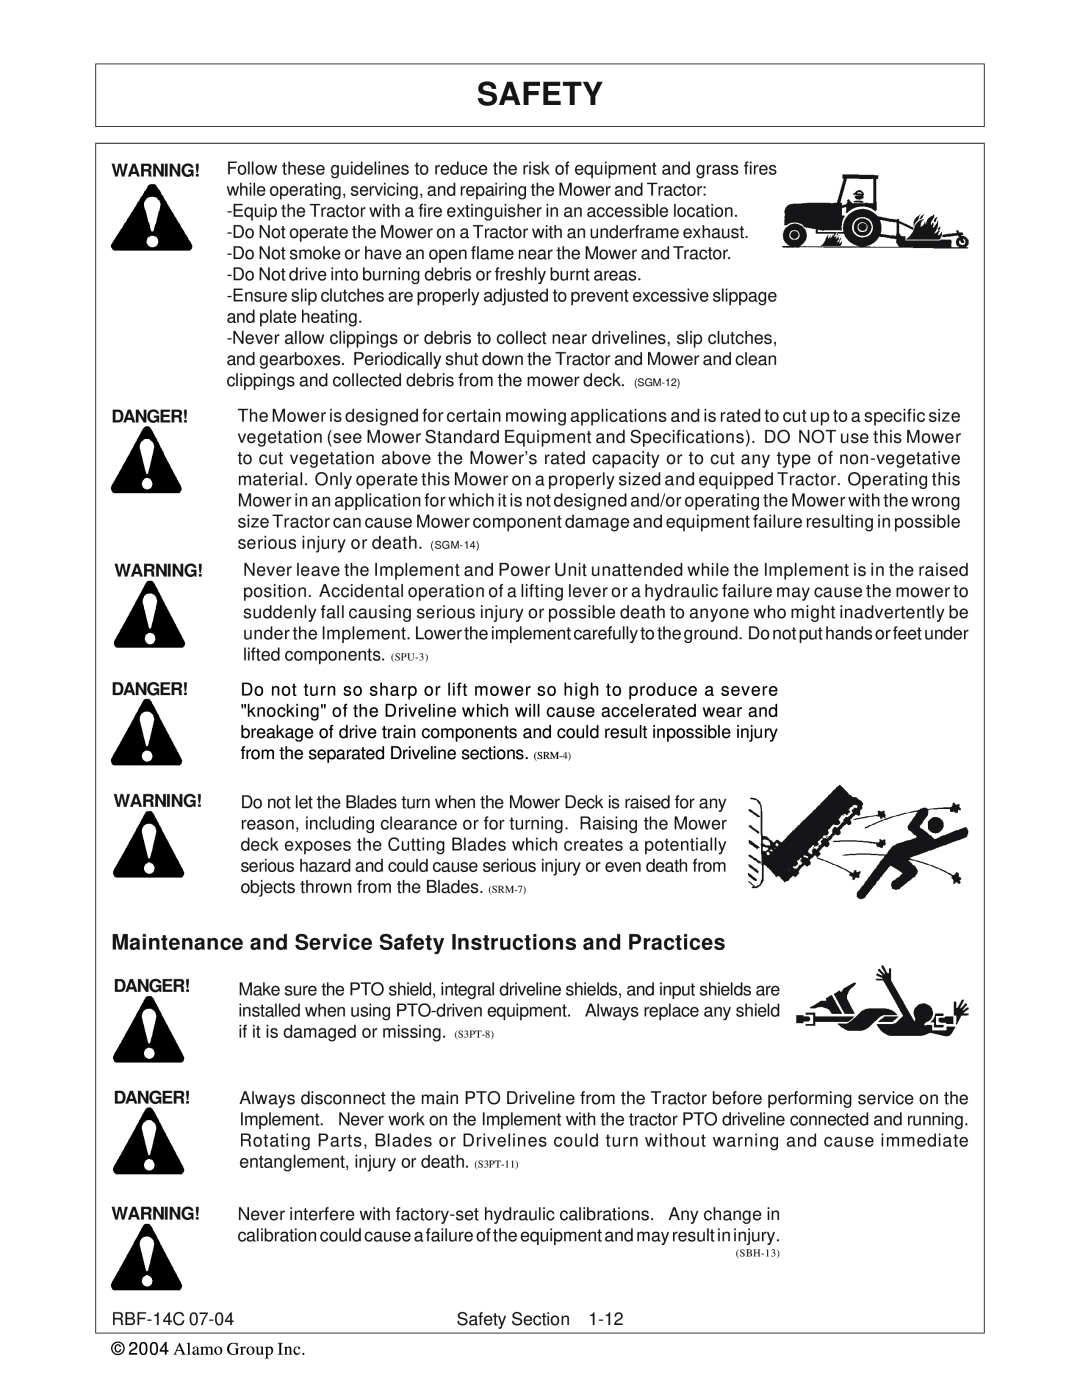 Tiger RBF-14C manual Safety, Danger Danger 